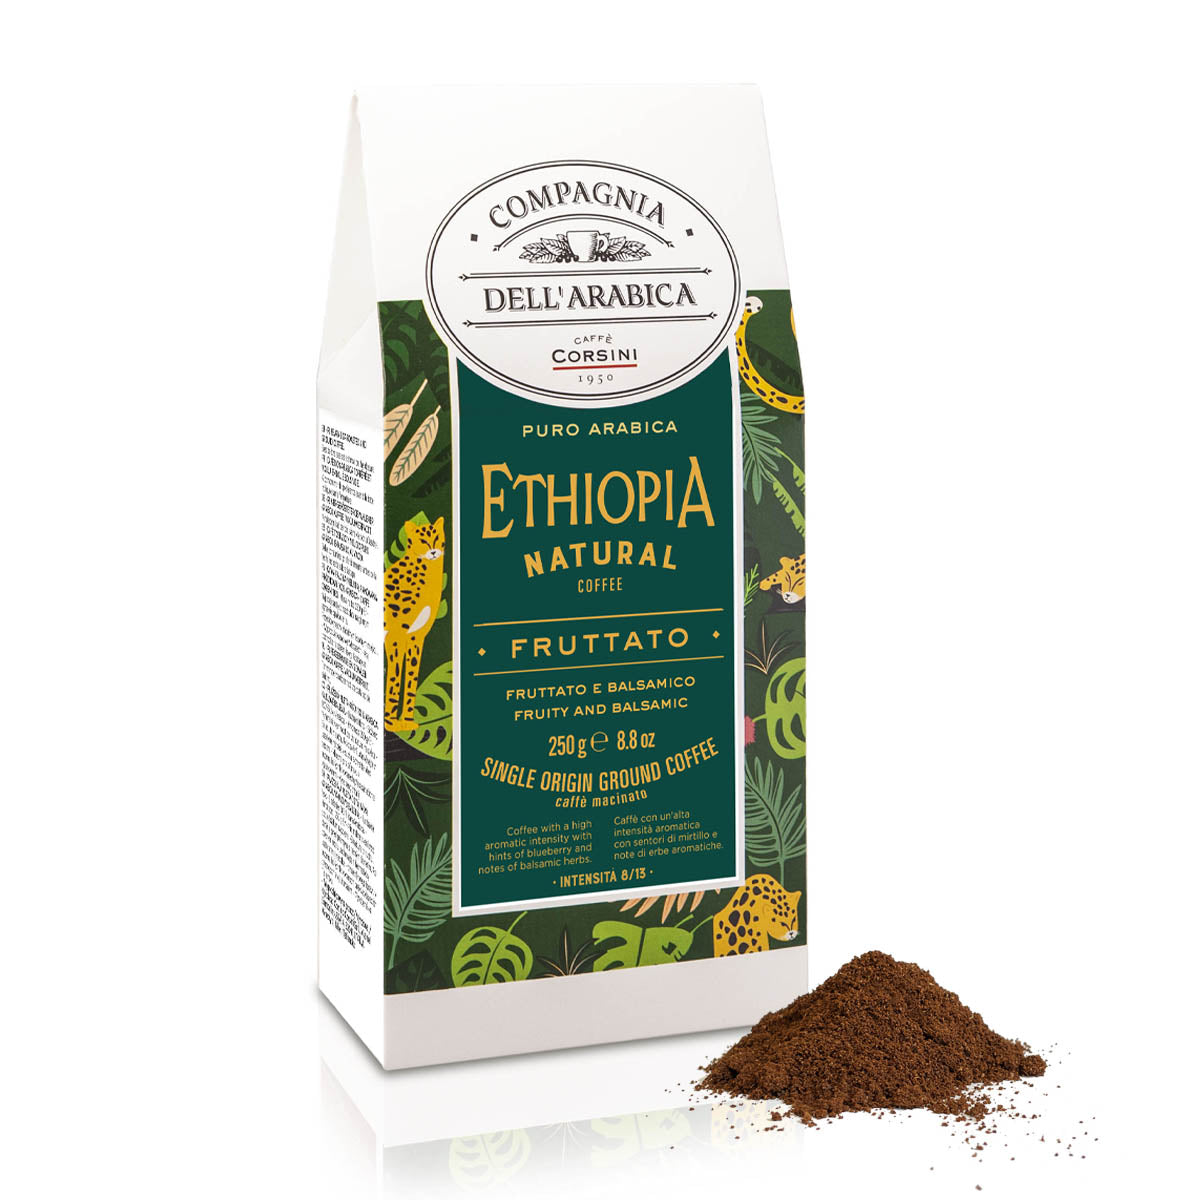 Caffè macinato | Ethiopia Natural Coffee | 100% Arabica | 250g